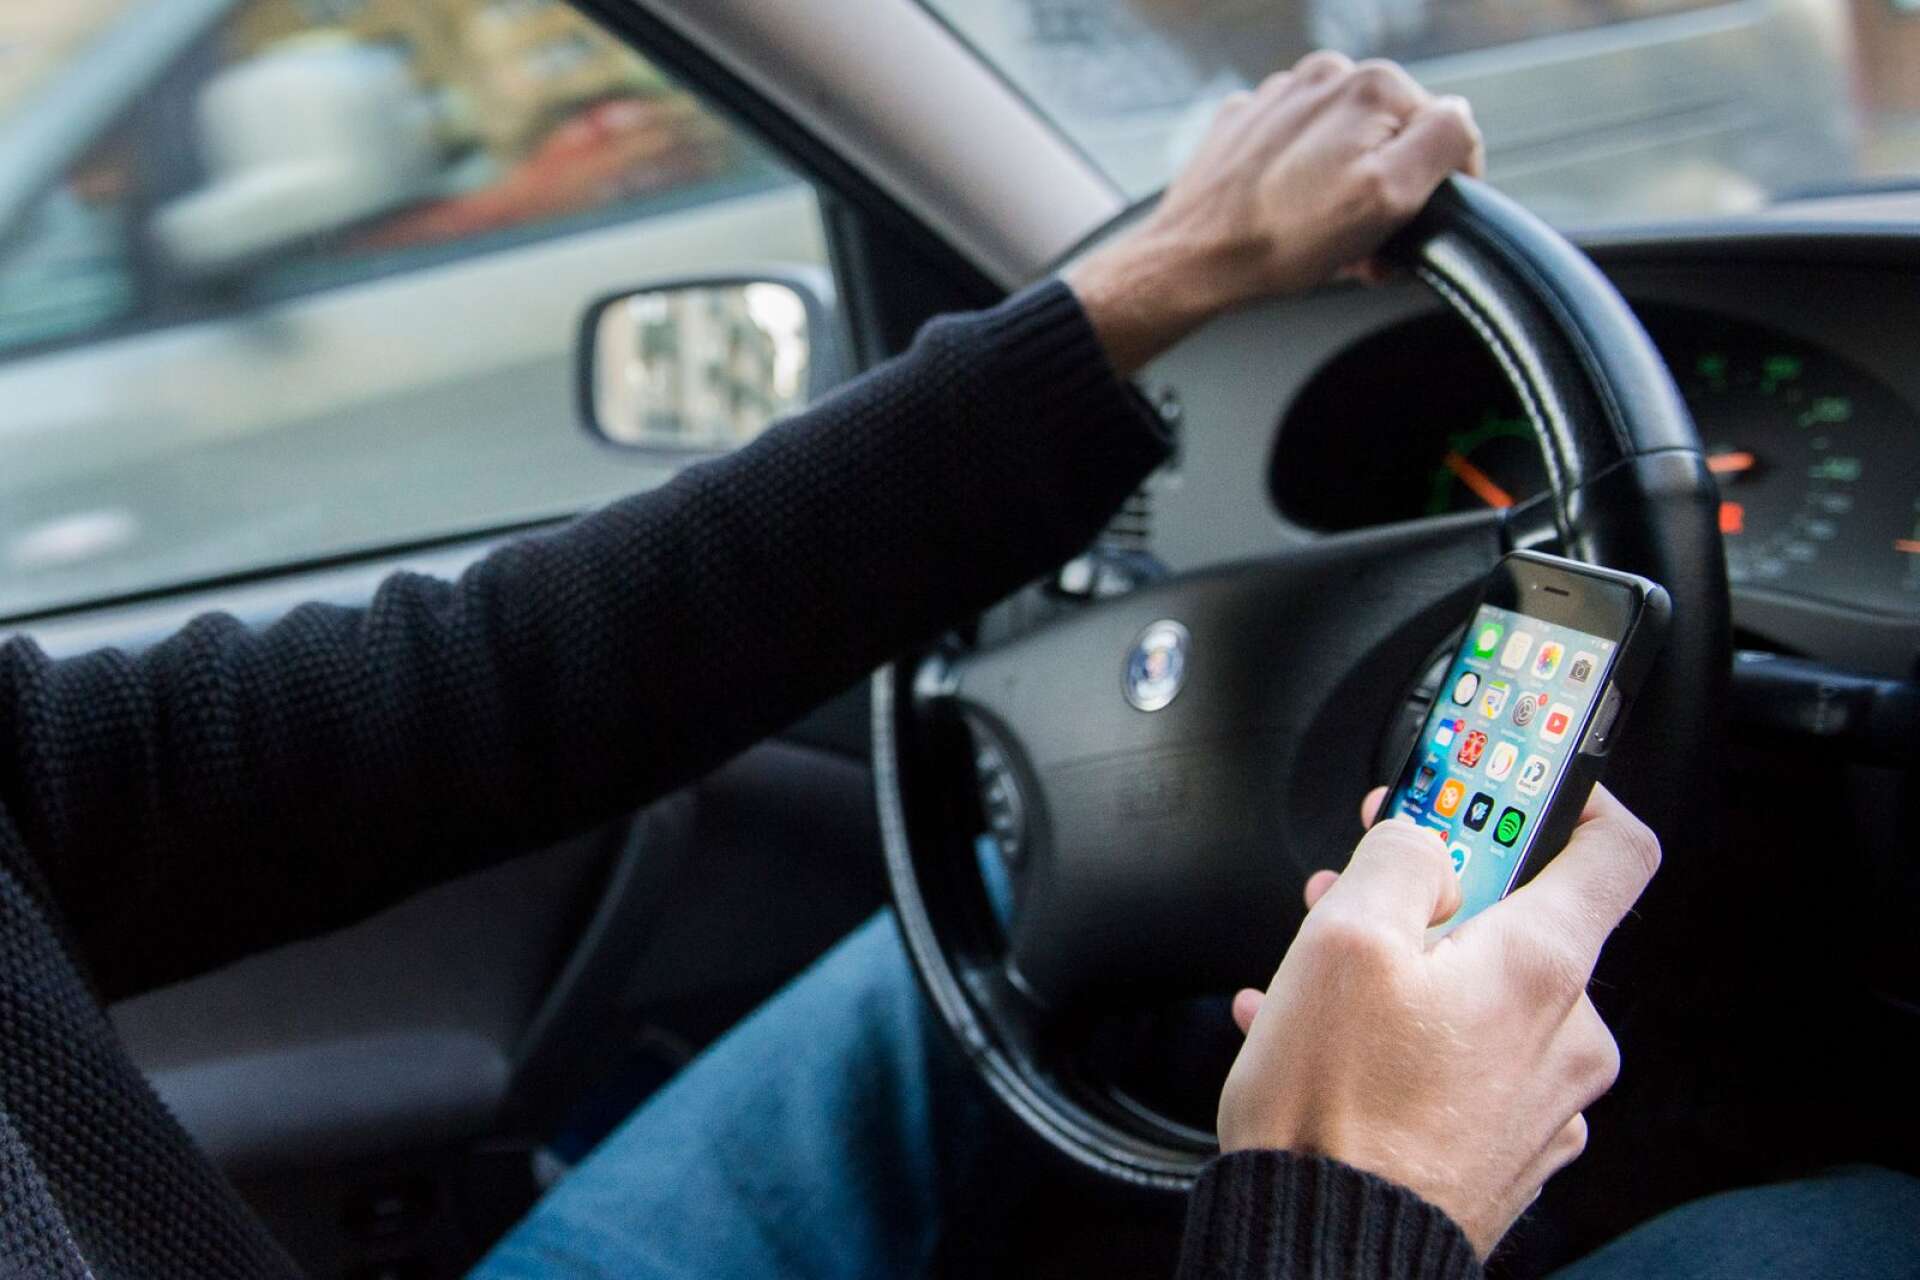 5 000 kronor i böter och indraget körkort i sex månader borde straffet höjas till för den som kör med mobilen i handen, tycker insändarskribenten.